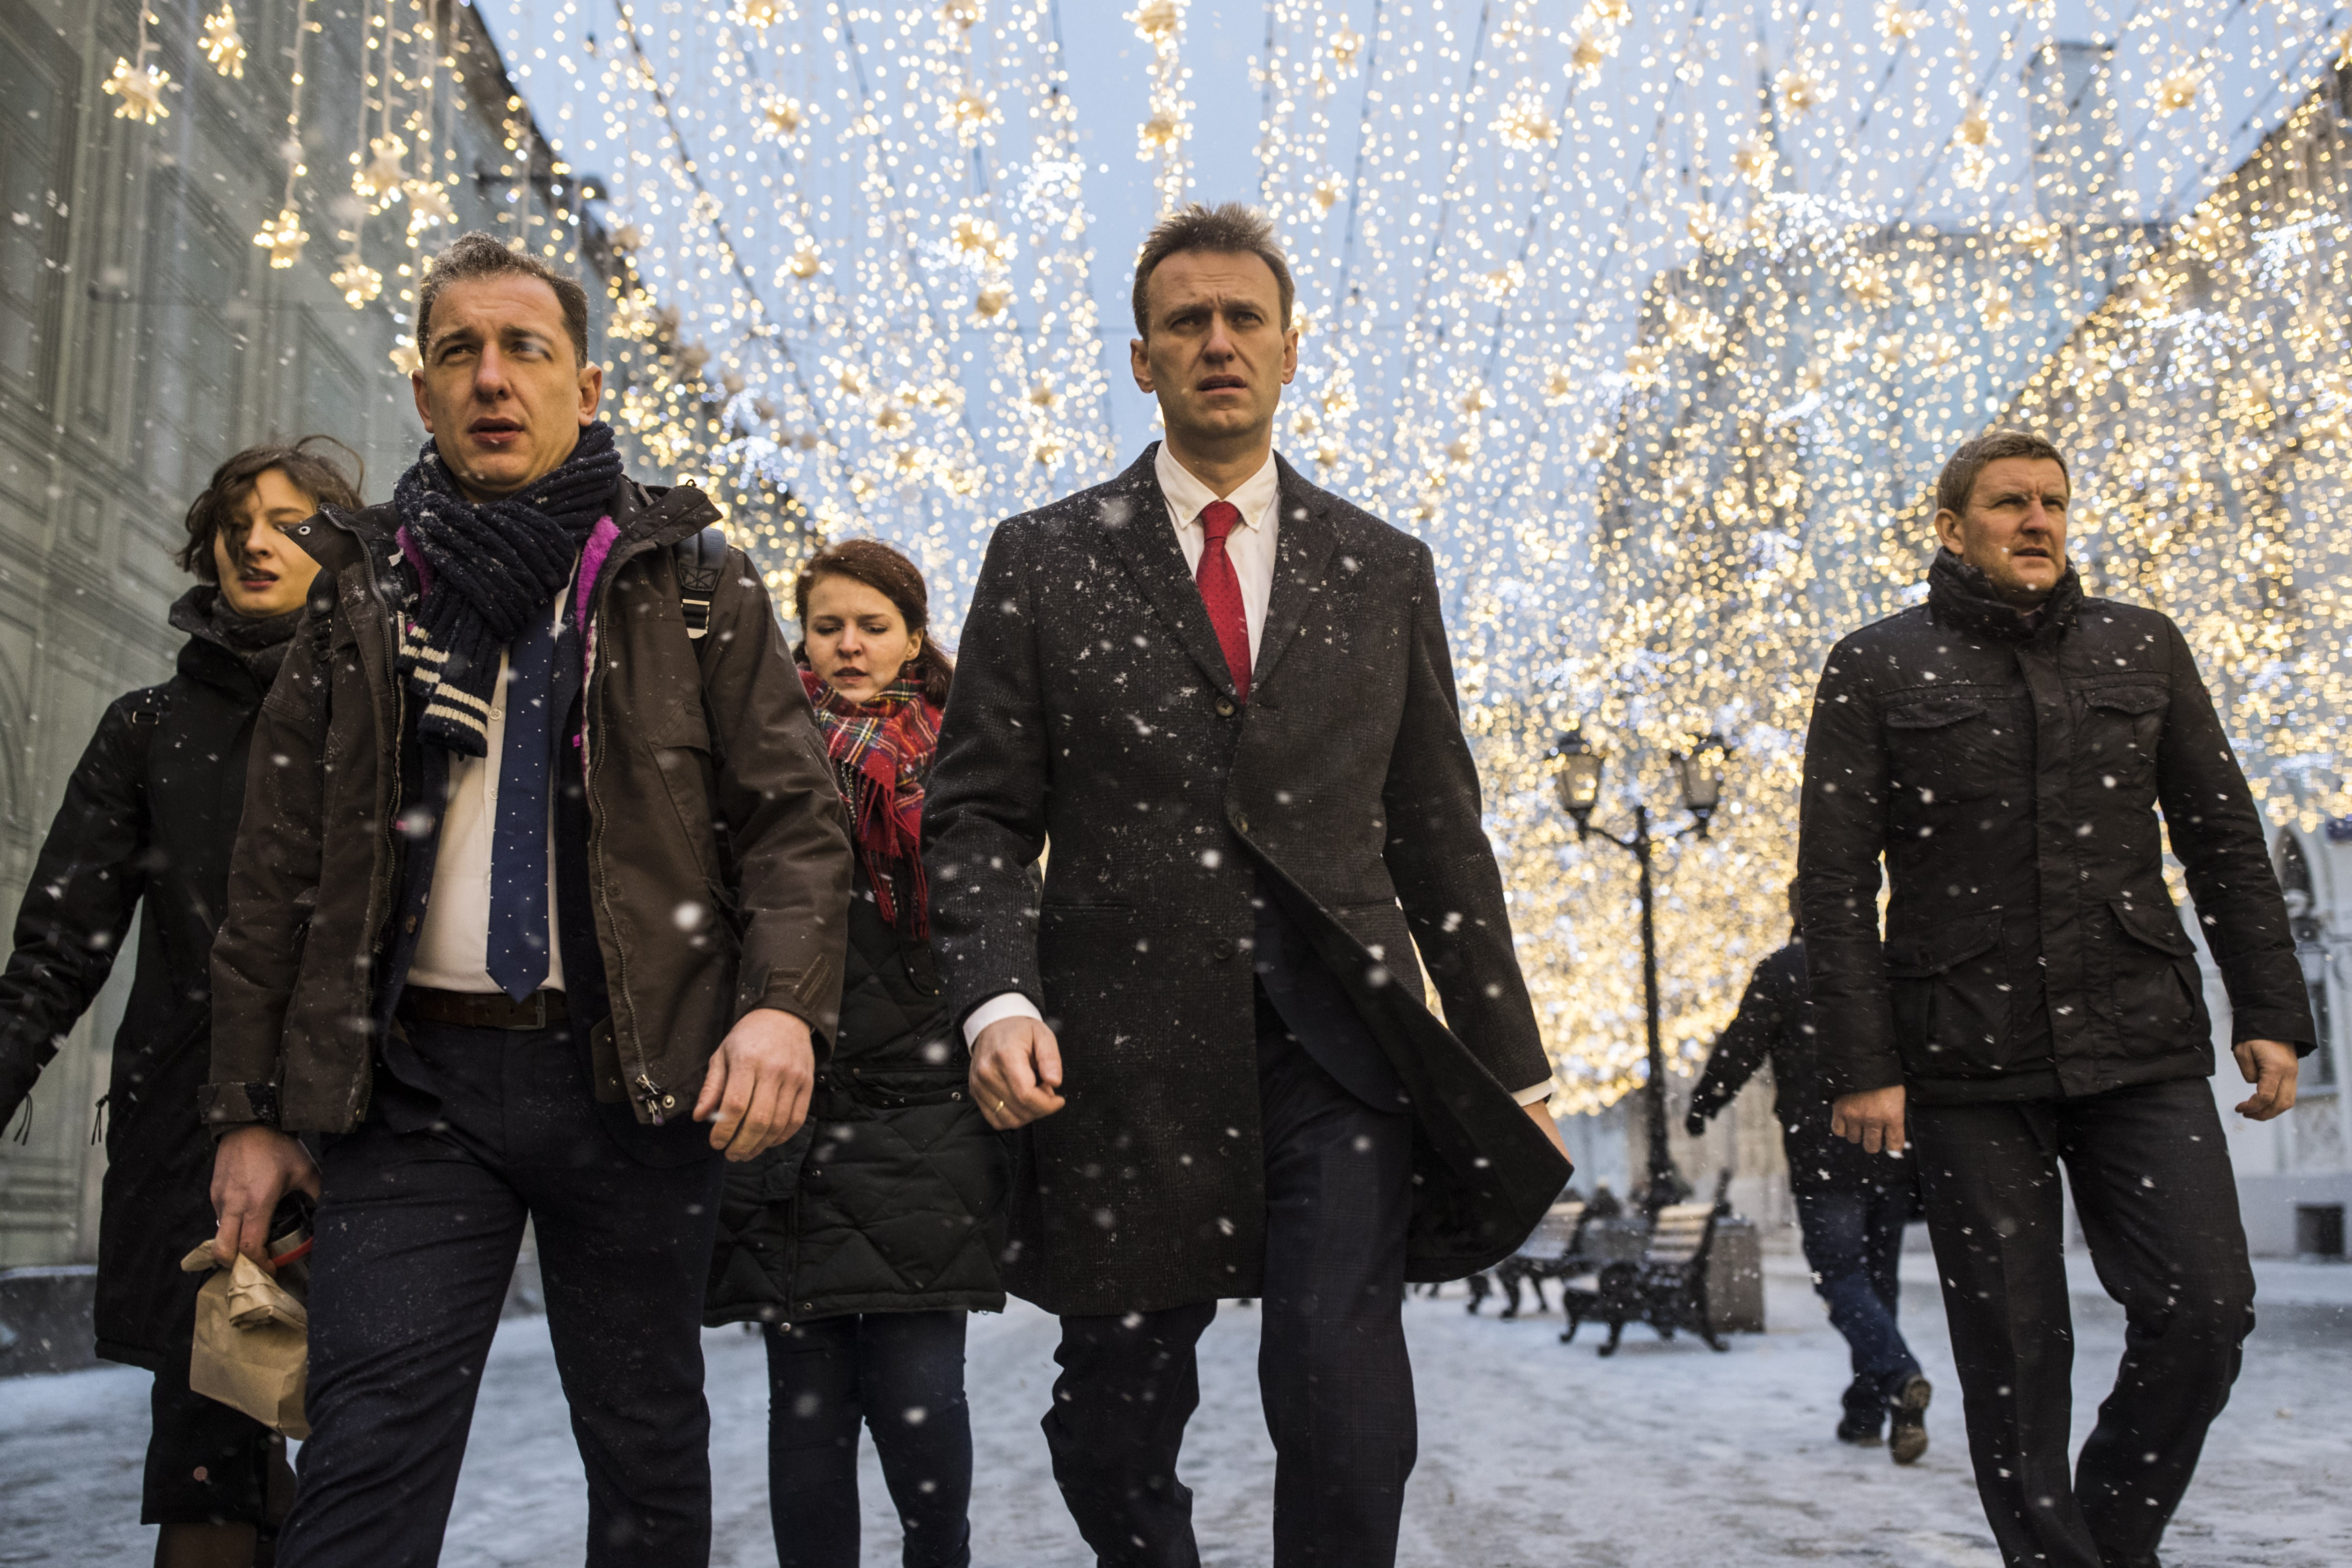 Az EU szerint megkérdőjelezi az orosz elnökválasztás demokratikus jellegét, hogy Navalnijt eltiltják az indulástól